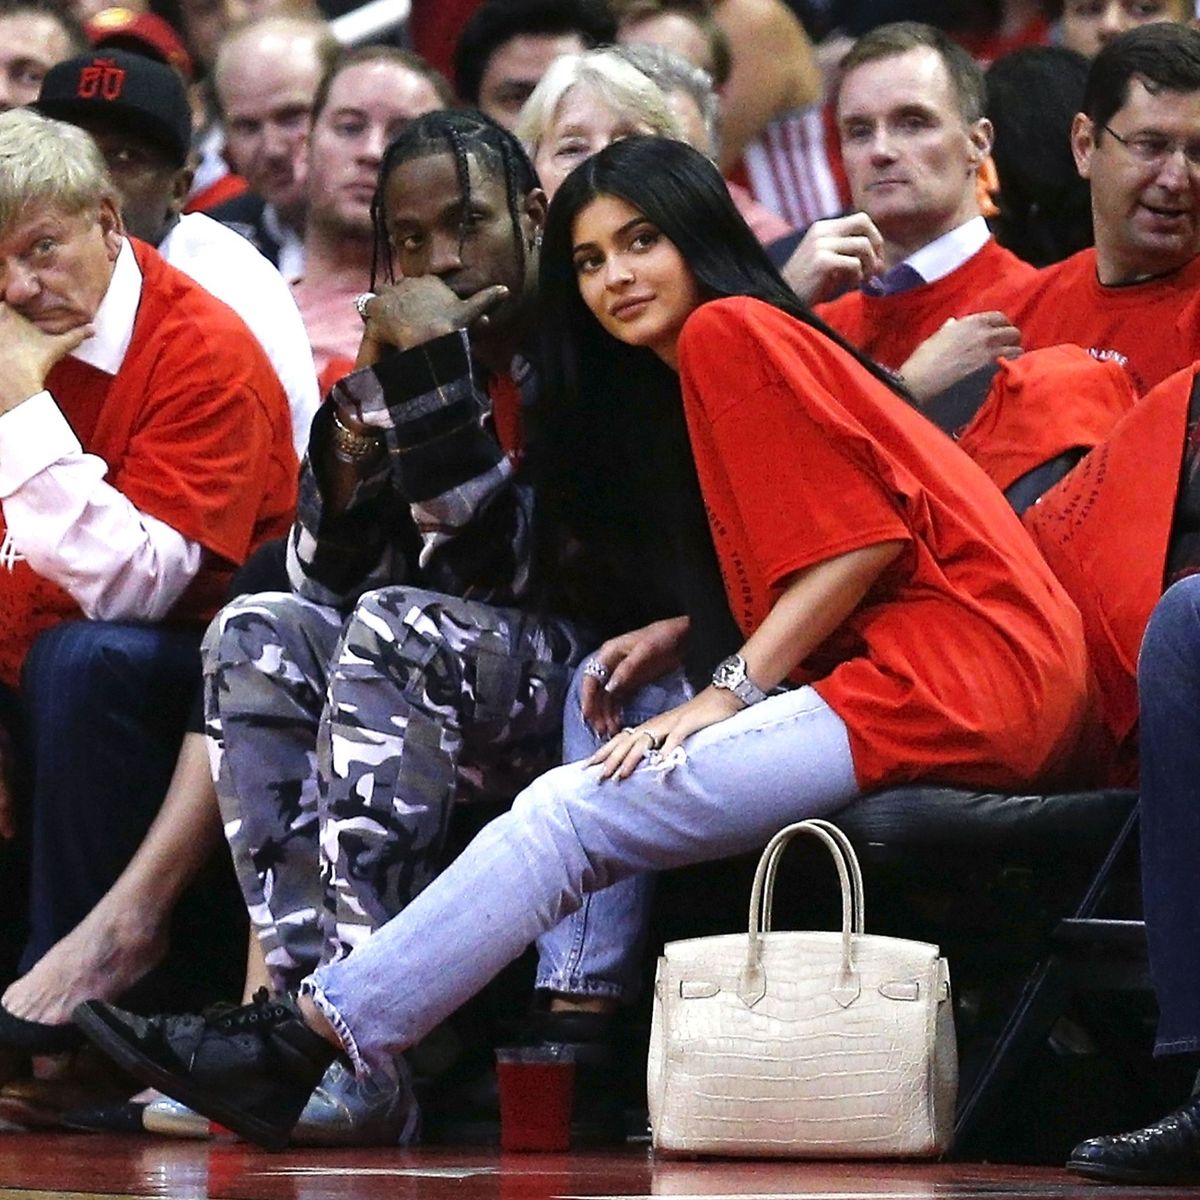 Kylie Jenner Seen with New Boyfriend Travis Scott Photos | Marie Claire